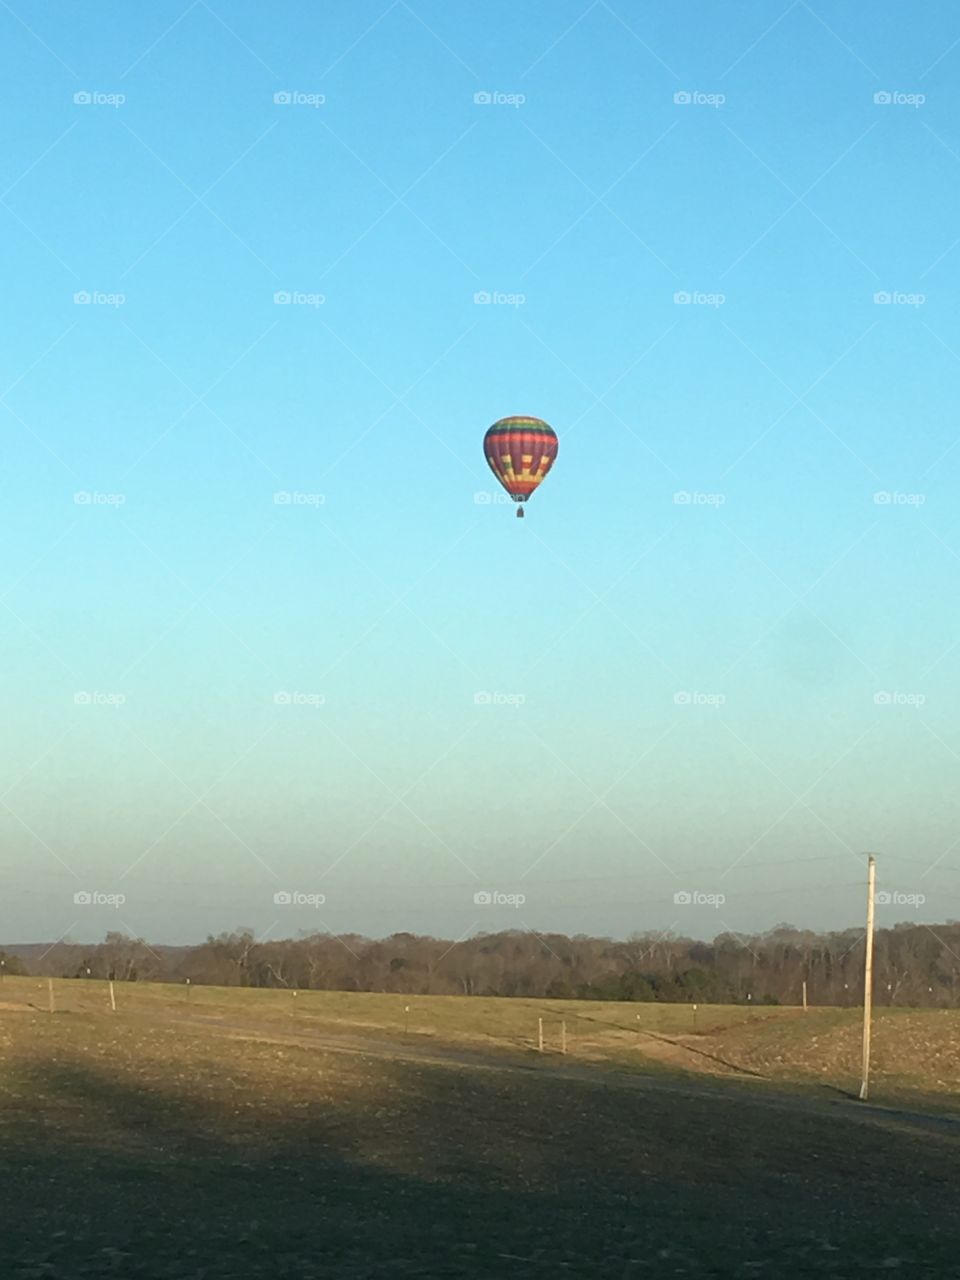 Hot air balloon flying at dusk in rural North Carolina.